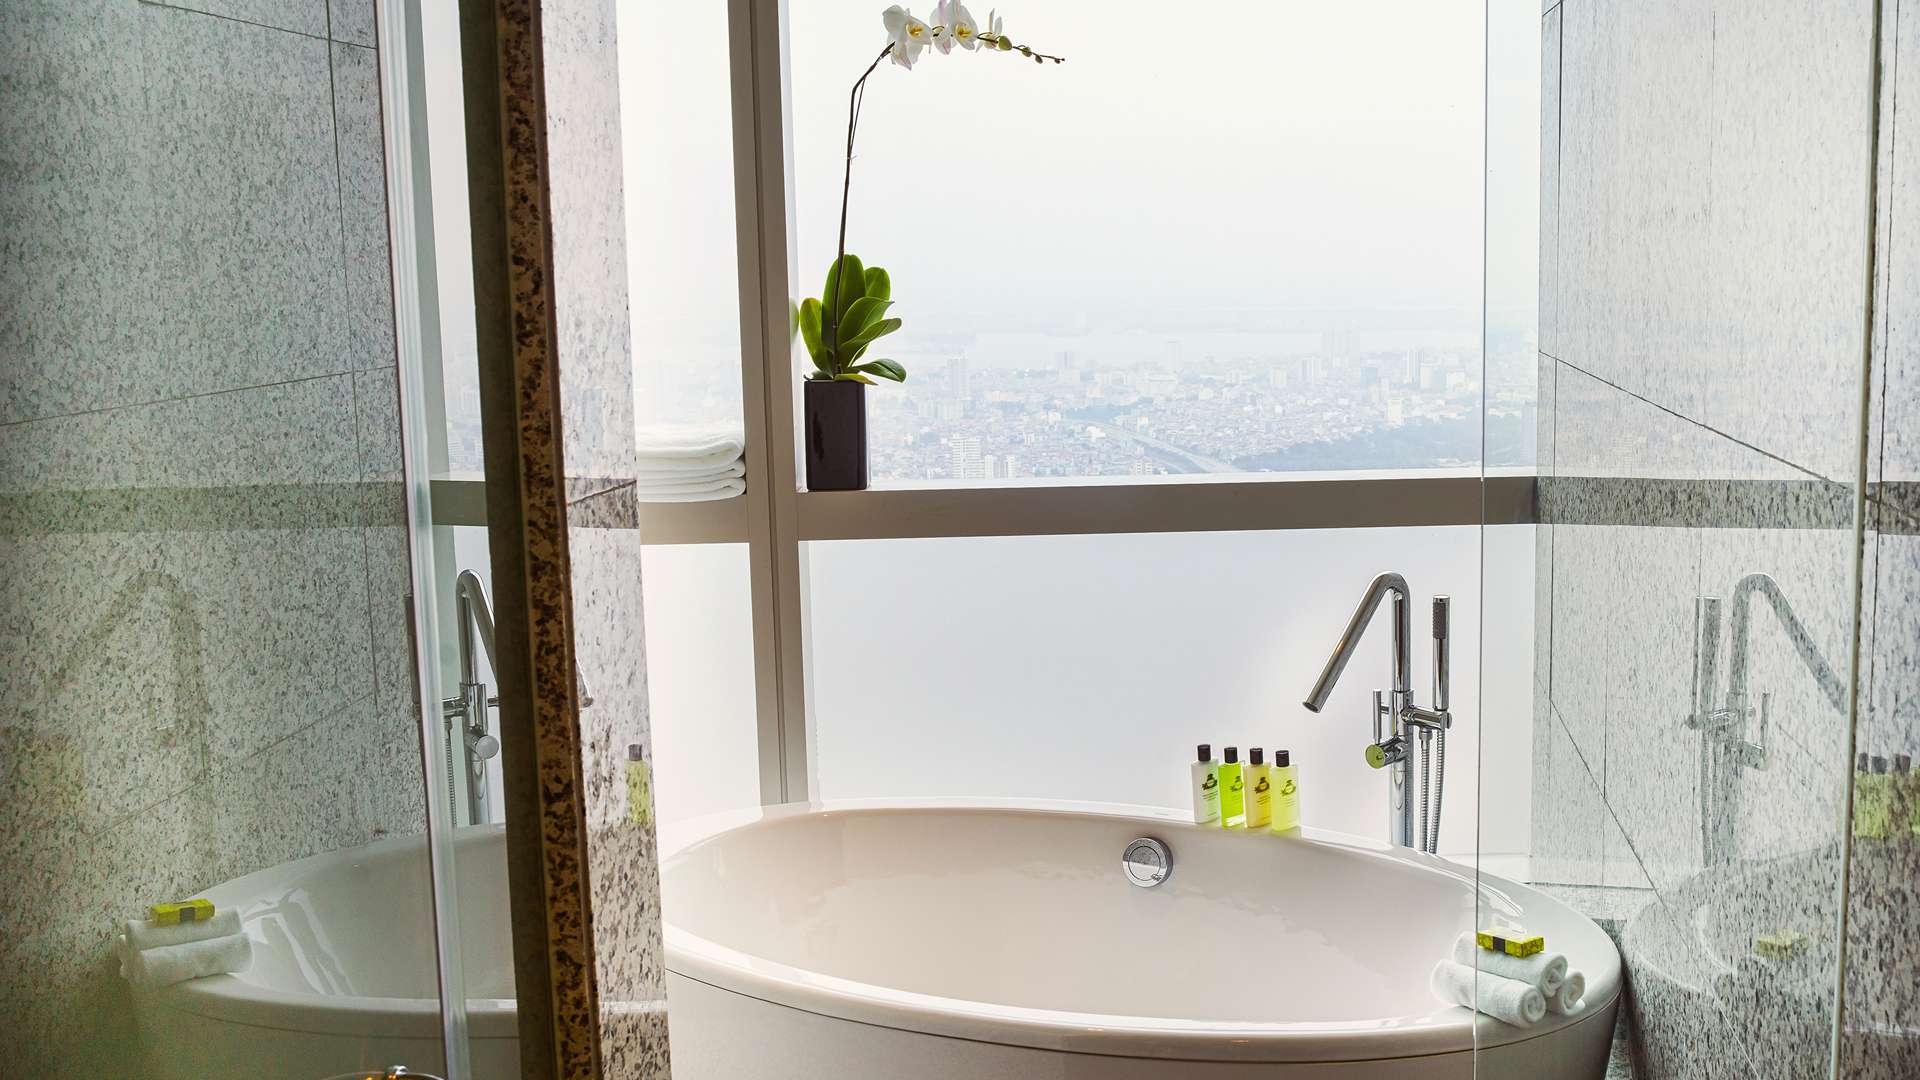 Phòng tắm sang trọng tại intercontinental hanoi landmark72 khách sạn 5 sao cao nhất hà nội